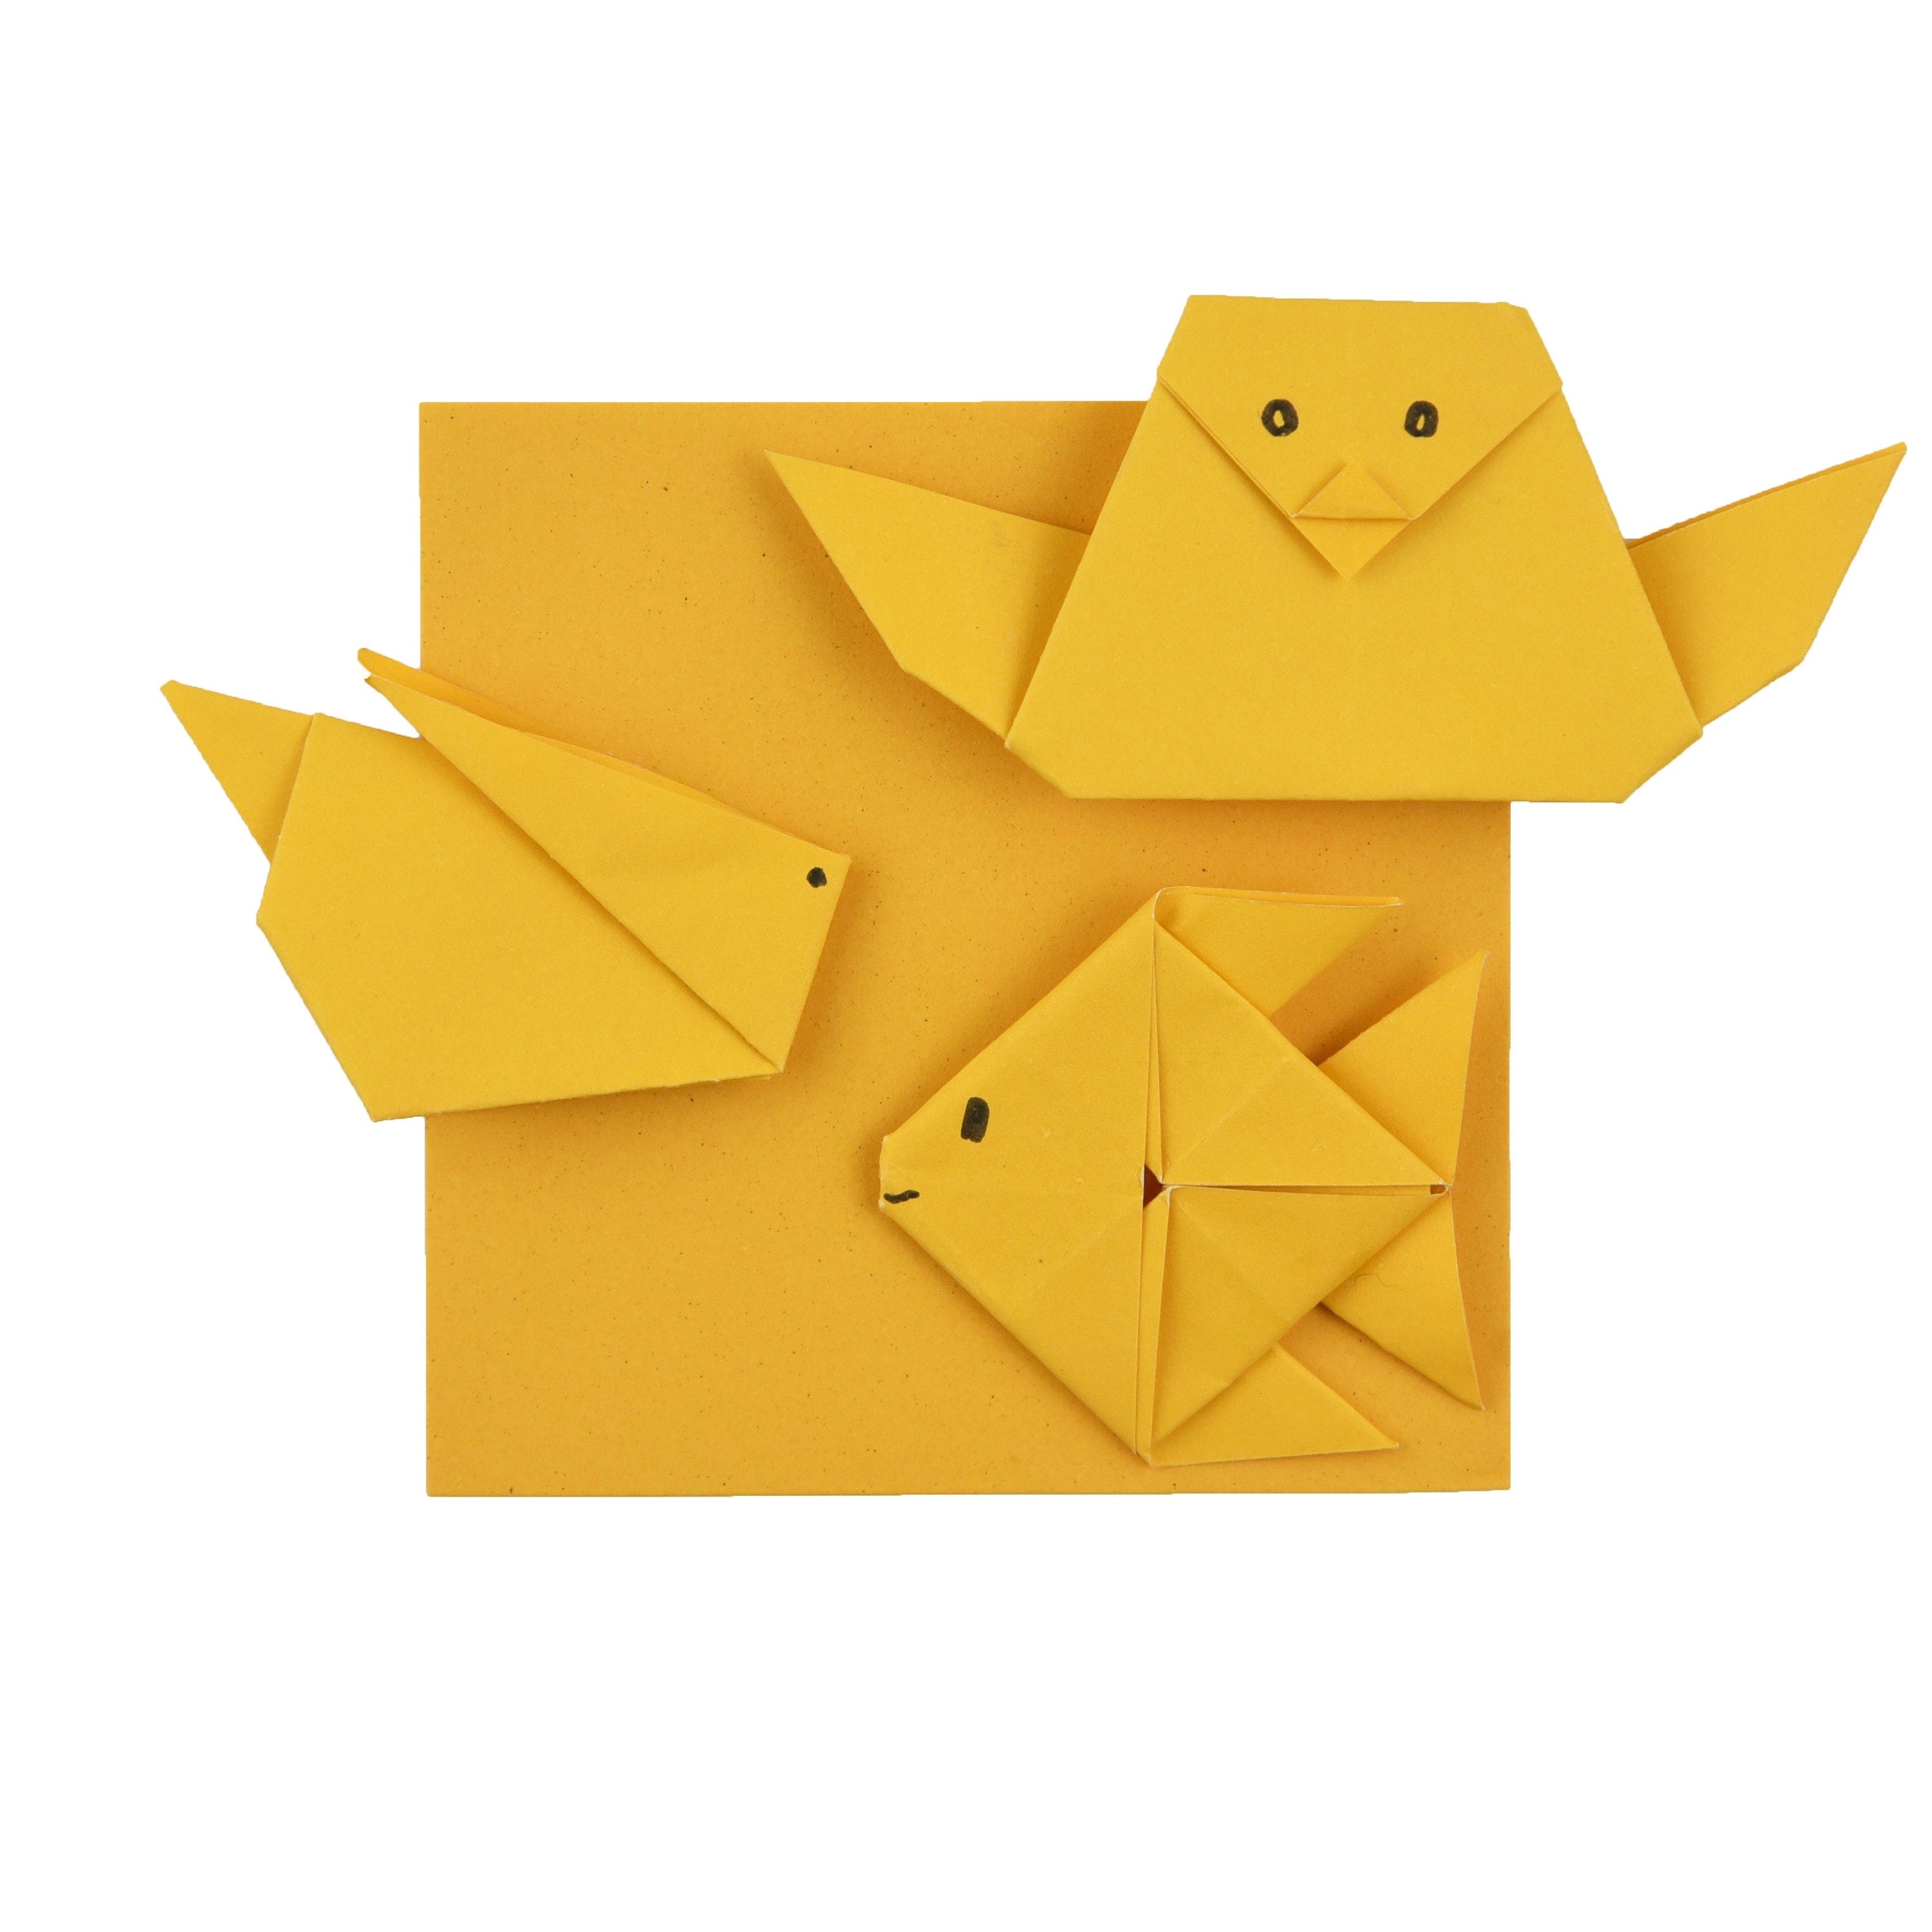 100 Hojas de Papel Origami - 3x3 pulgadas - Paquete de Papel Cuadrado para Plegar, Grullas de Origami y Decoración - S26